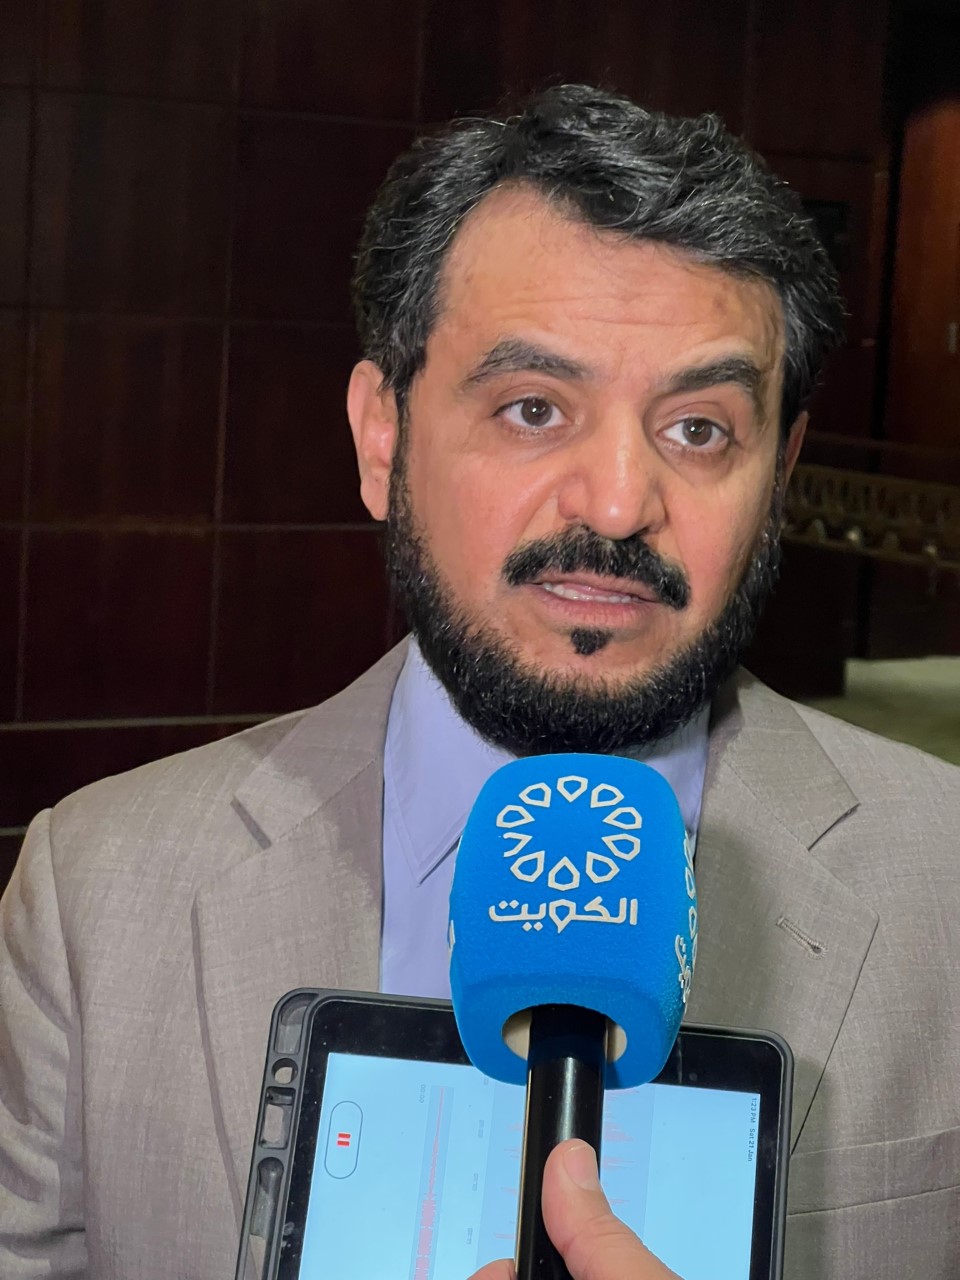 النائب د. محمد الحويلة يؤكد أهمية التنسيق بين البرلمانات العربية لتحصين الشباب العربي